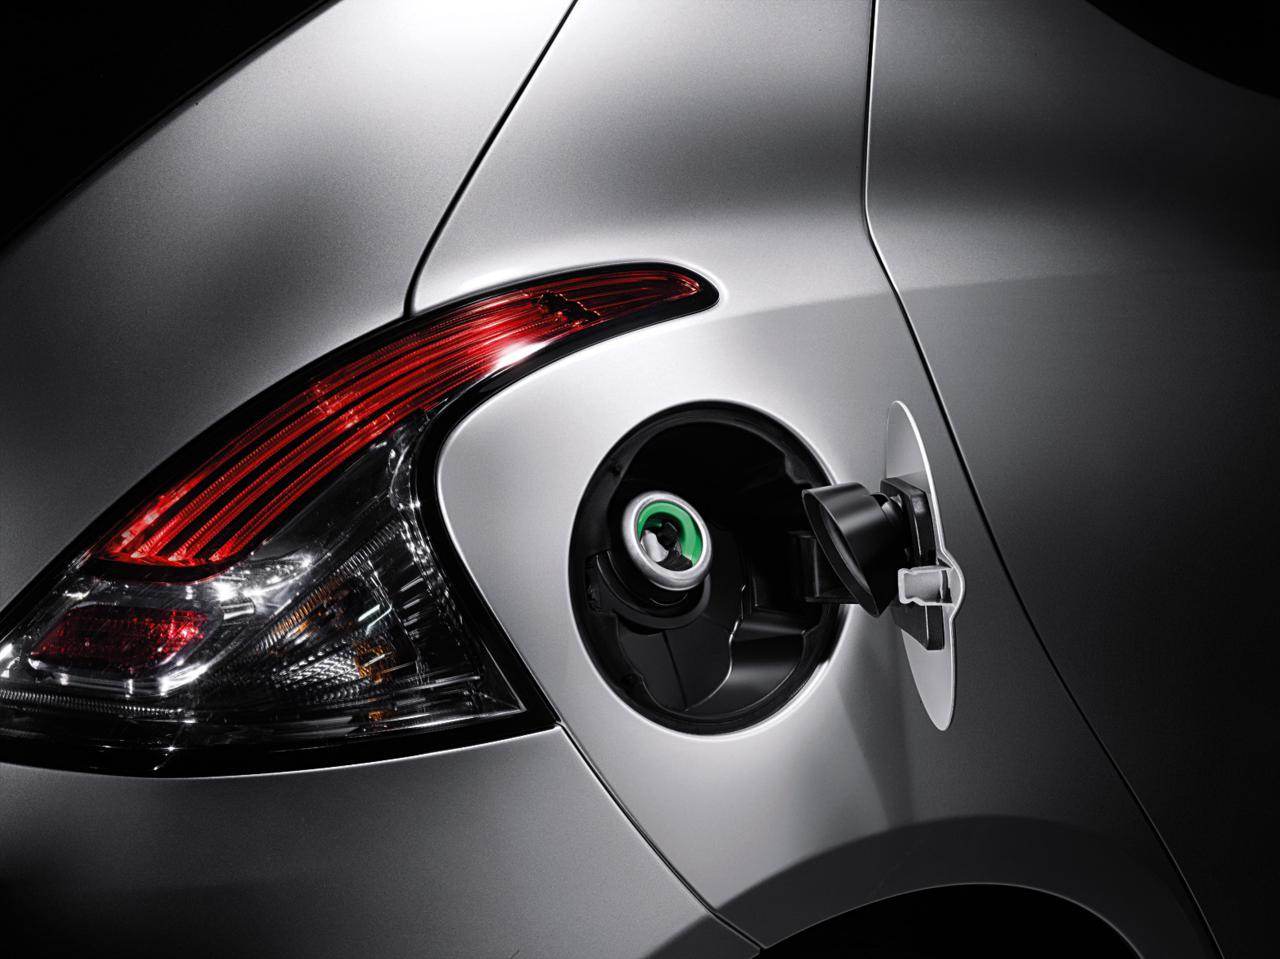 smart-fuel-system-sistema-smart-fuel-nuova-lancia-ypsilon.jpg